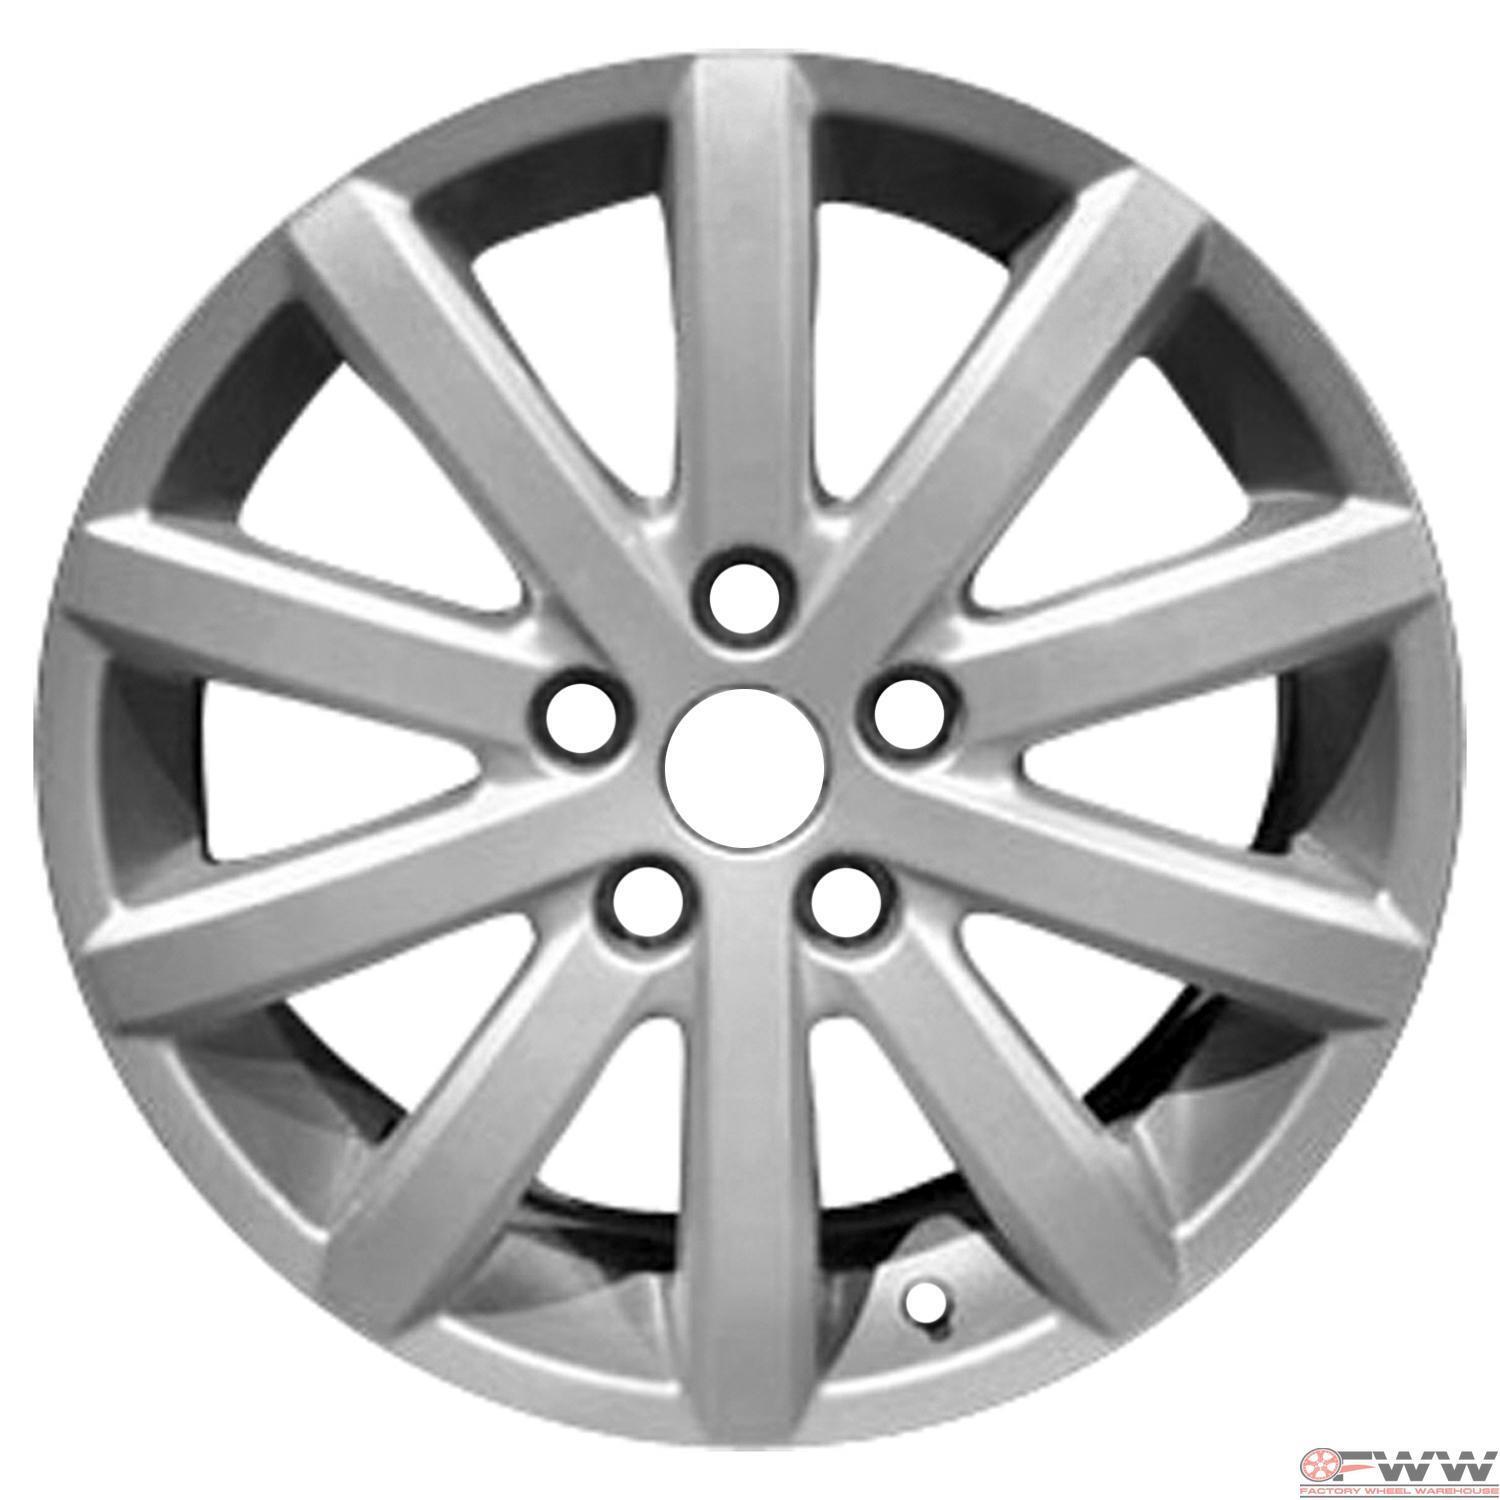 Suzuki SX4 Wheel 2010-2013 17